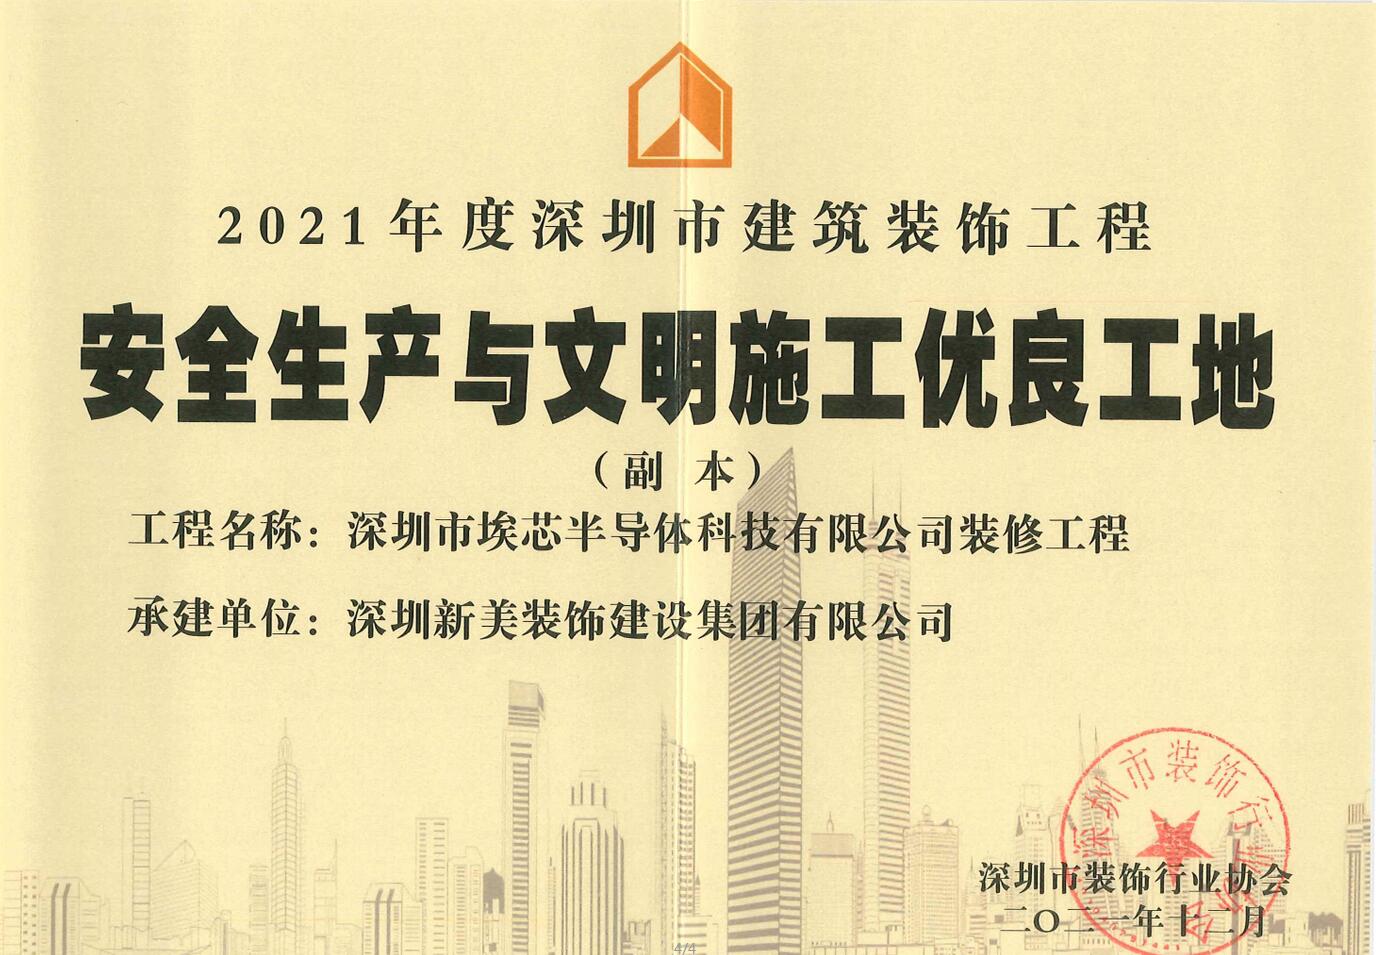 荣誉 | 新美集团荣获“2021年度深圳市建筑装饰工程安全生产与文明施工优良工地”称号